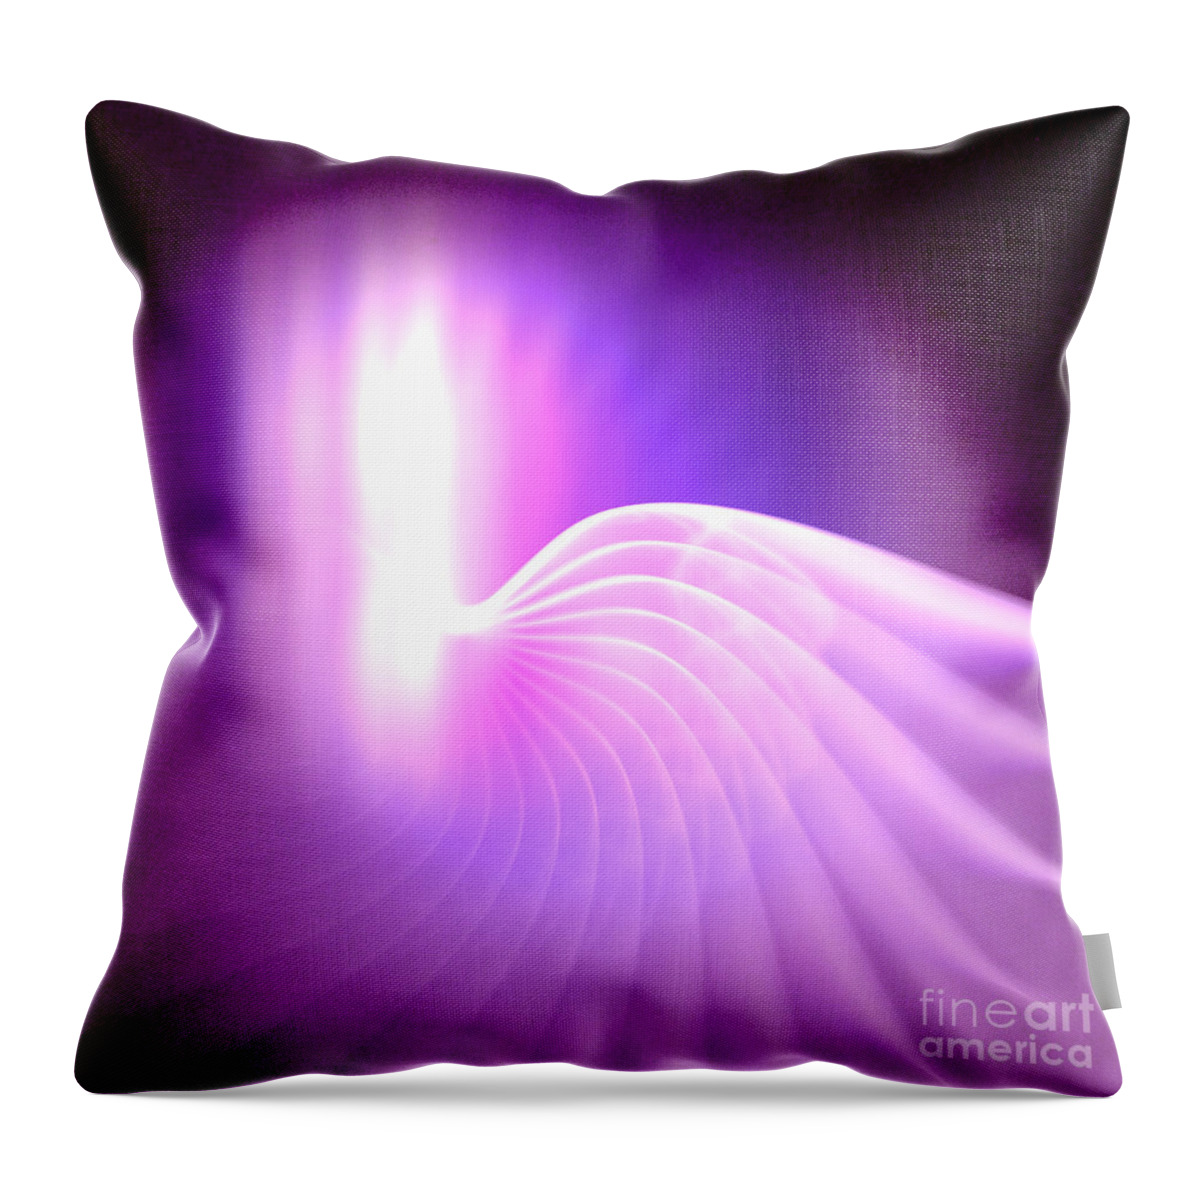 Archangels Throw Pillow featuring the digital art Archangel Gabriel by Alexa Szlavics